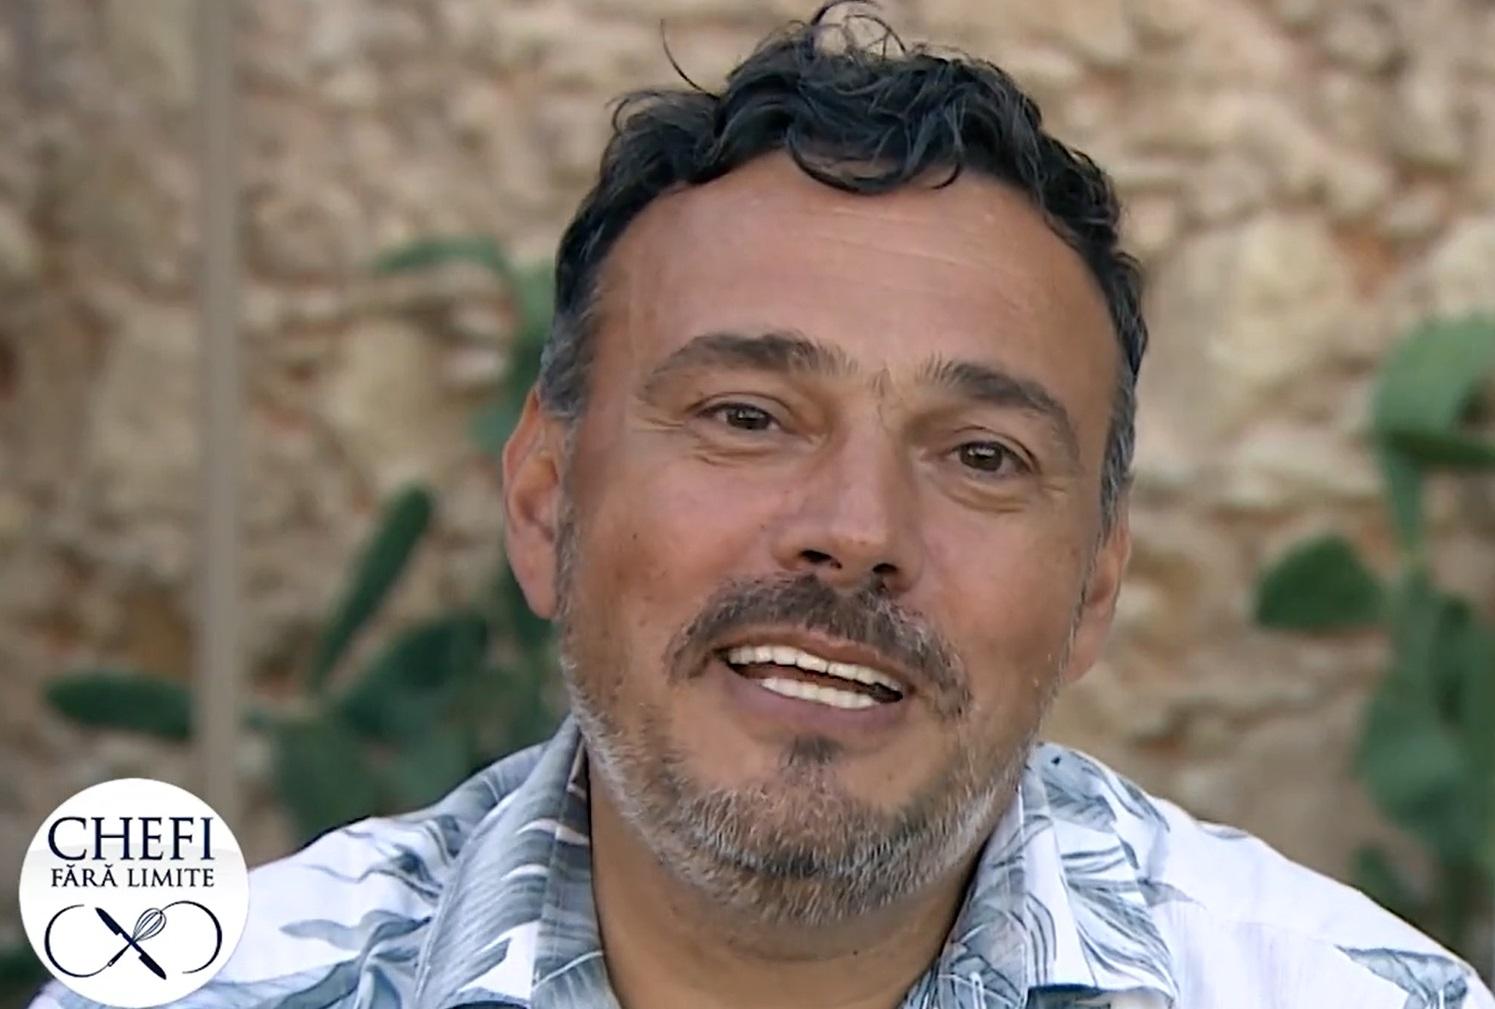 Cine e chef Iosif Ștefănescu, simpaticul co-prezentator al emisiunii Chefi fără limite de la Antena 1